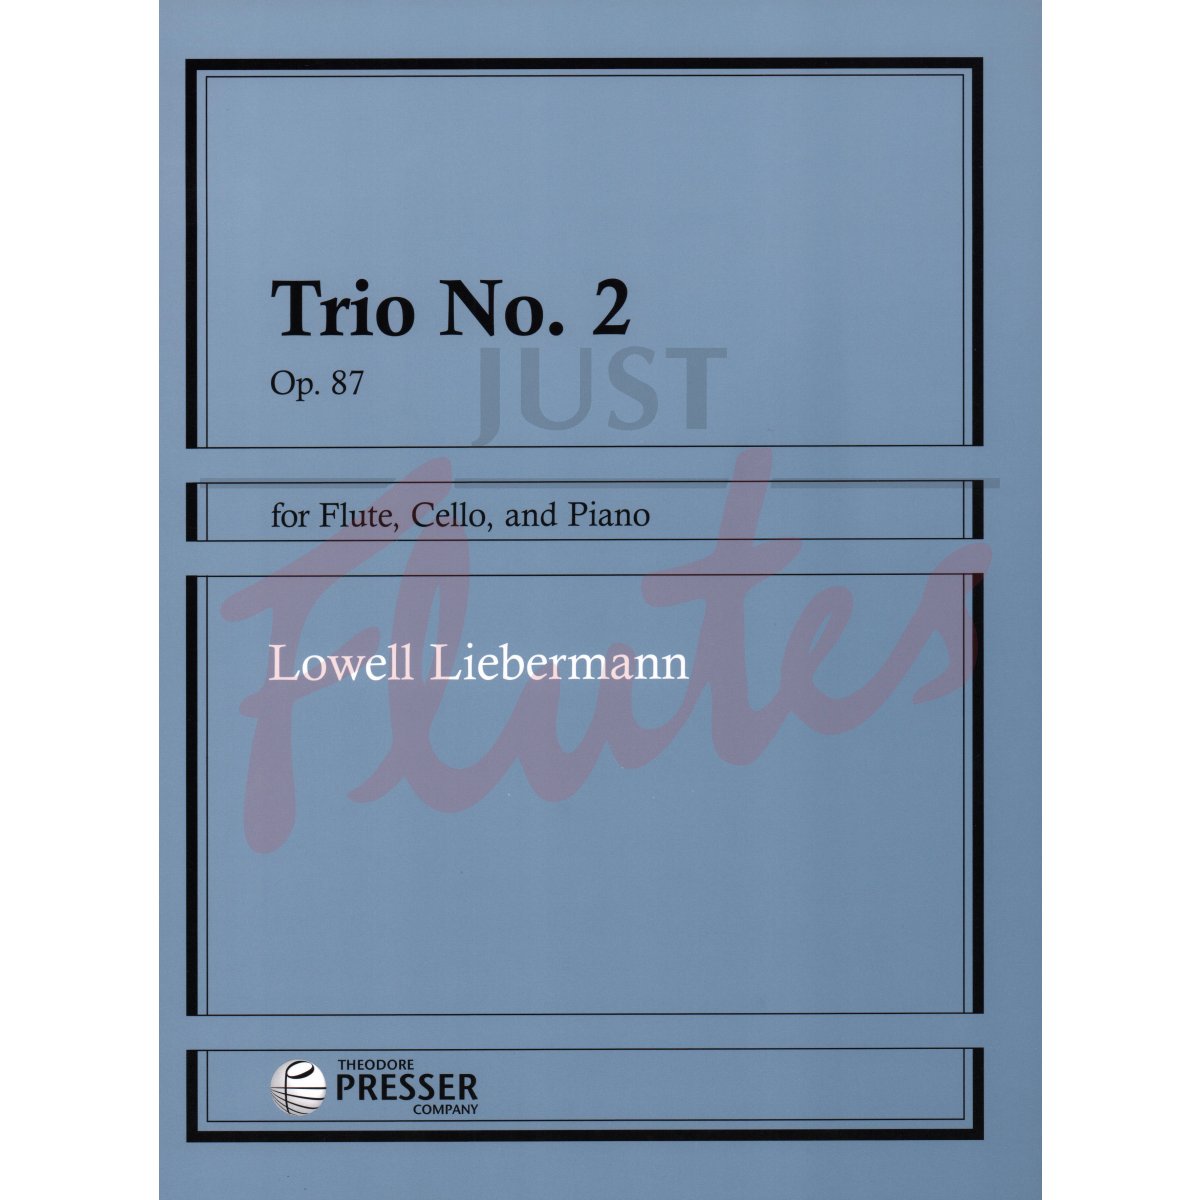 Trio No. 2 for Flute, Cello and Piano